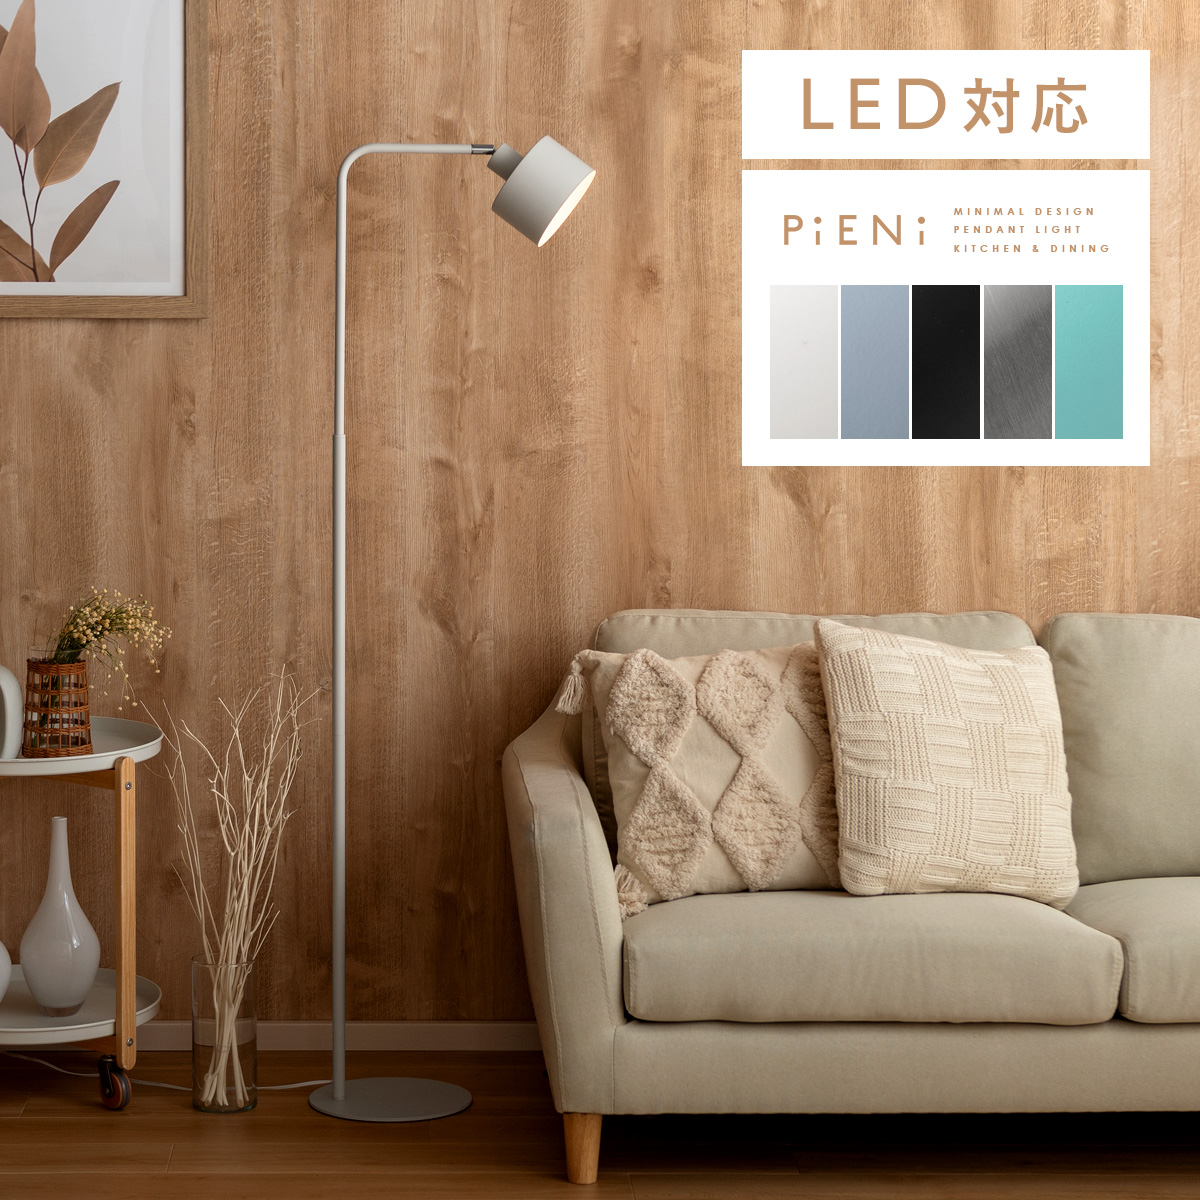 スタンドライト PiENi(ピエニ) 1灯タイプ | 【公式】 エア・リゾーム おしゃれな北欧インテリア・家具の通販